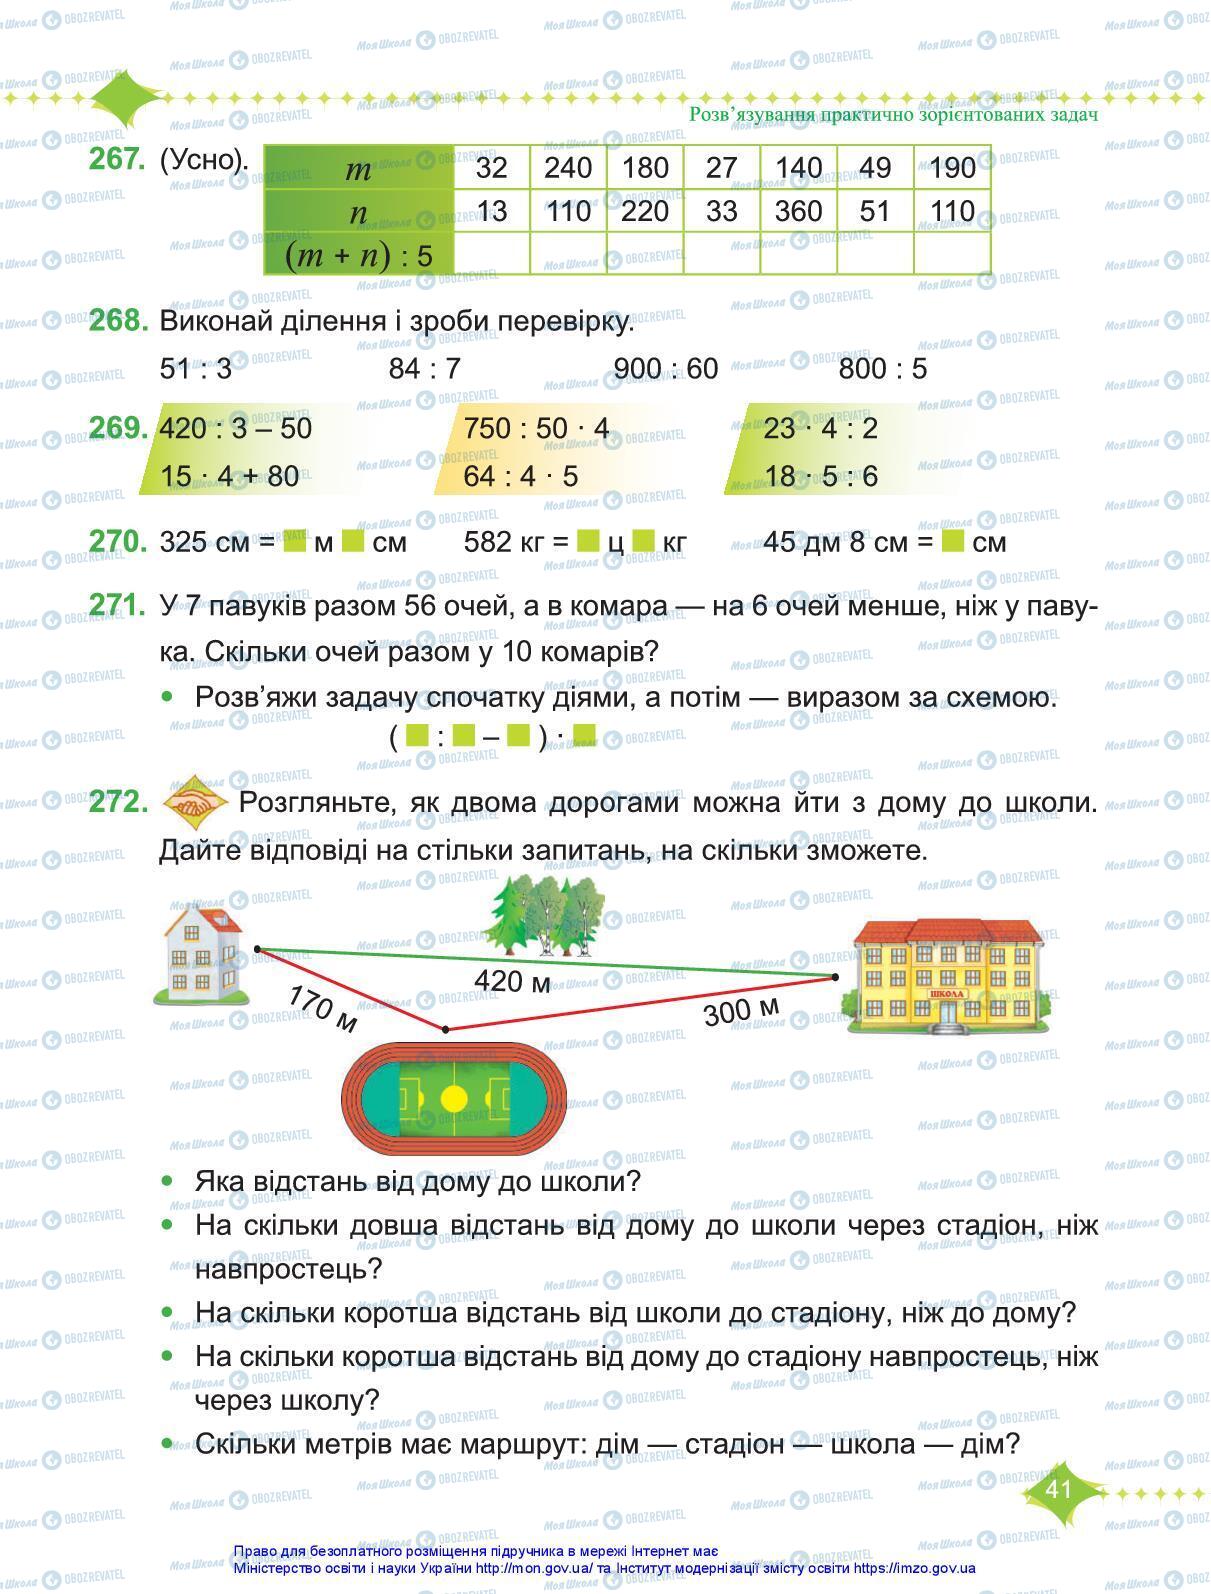 Підручники Математика 3 клас сторінка 41